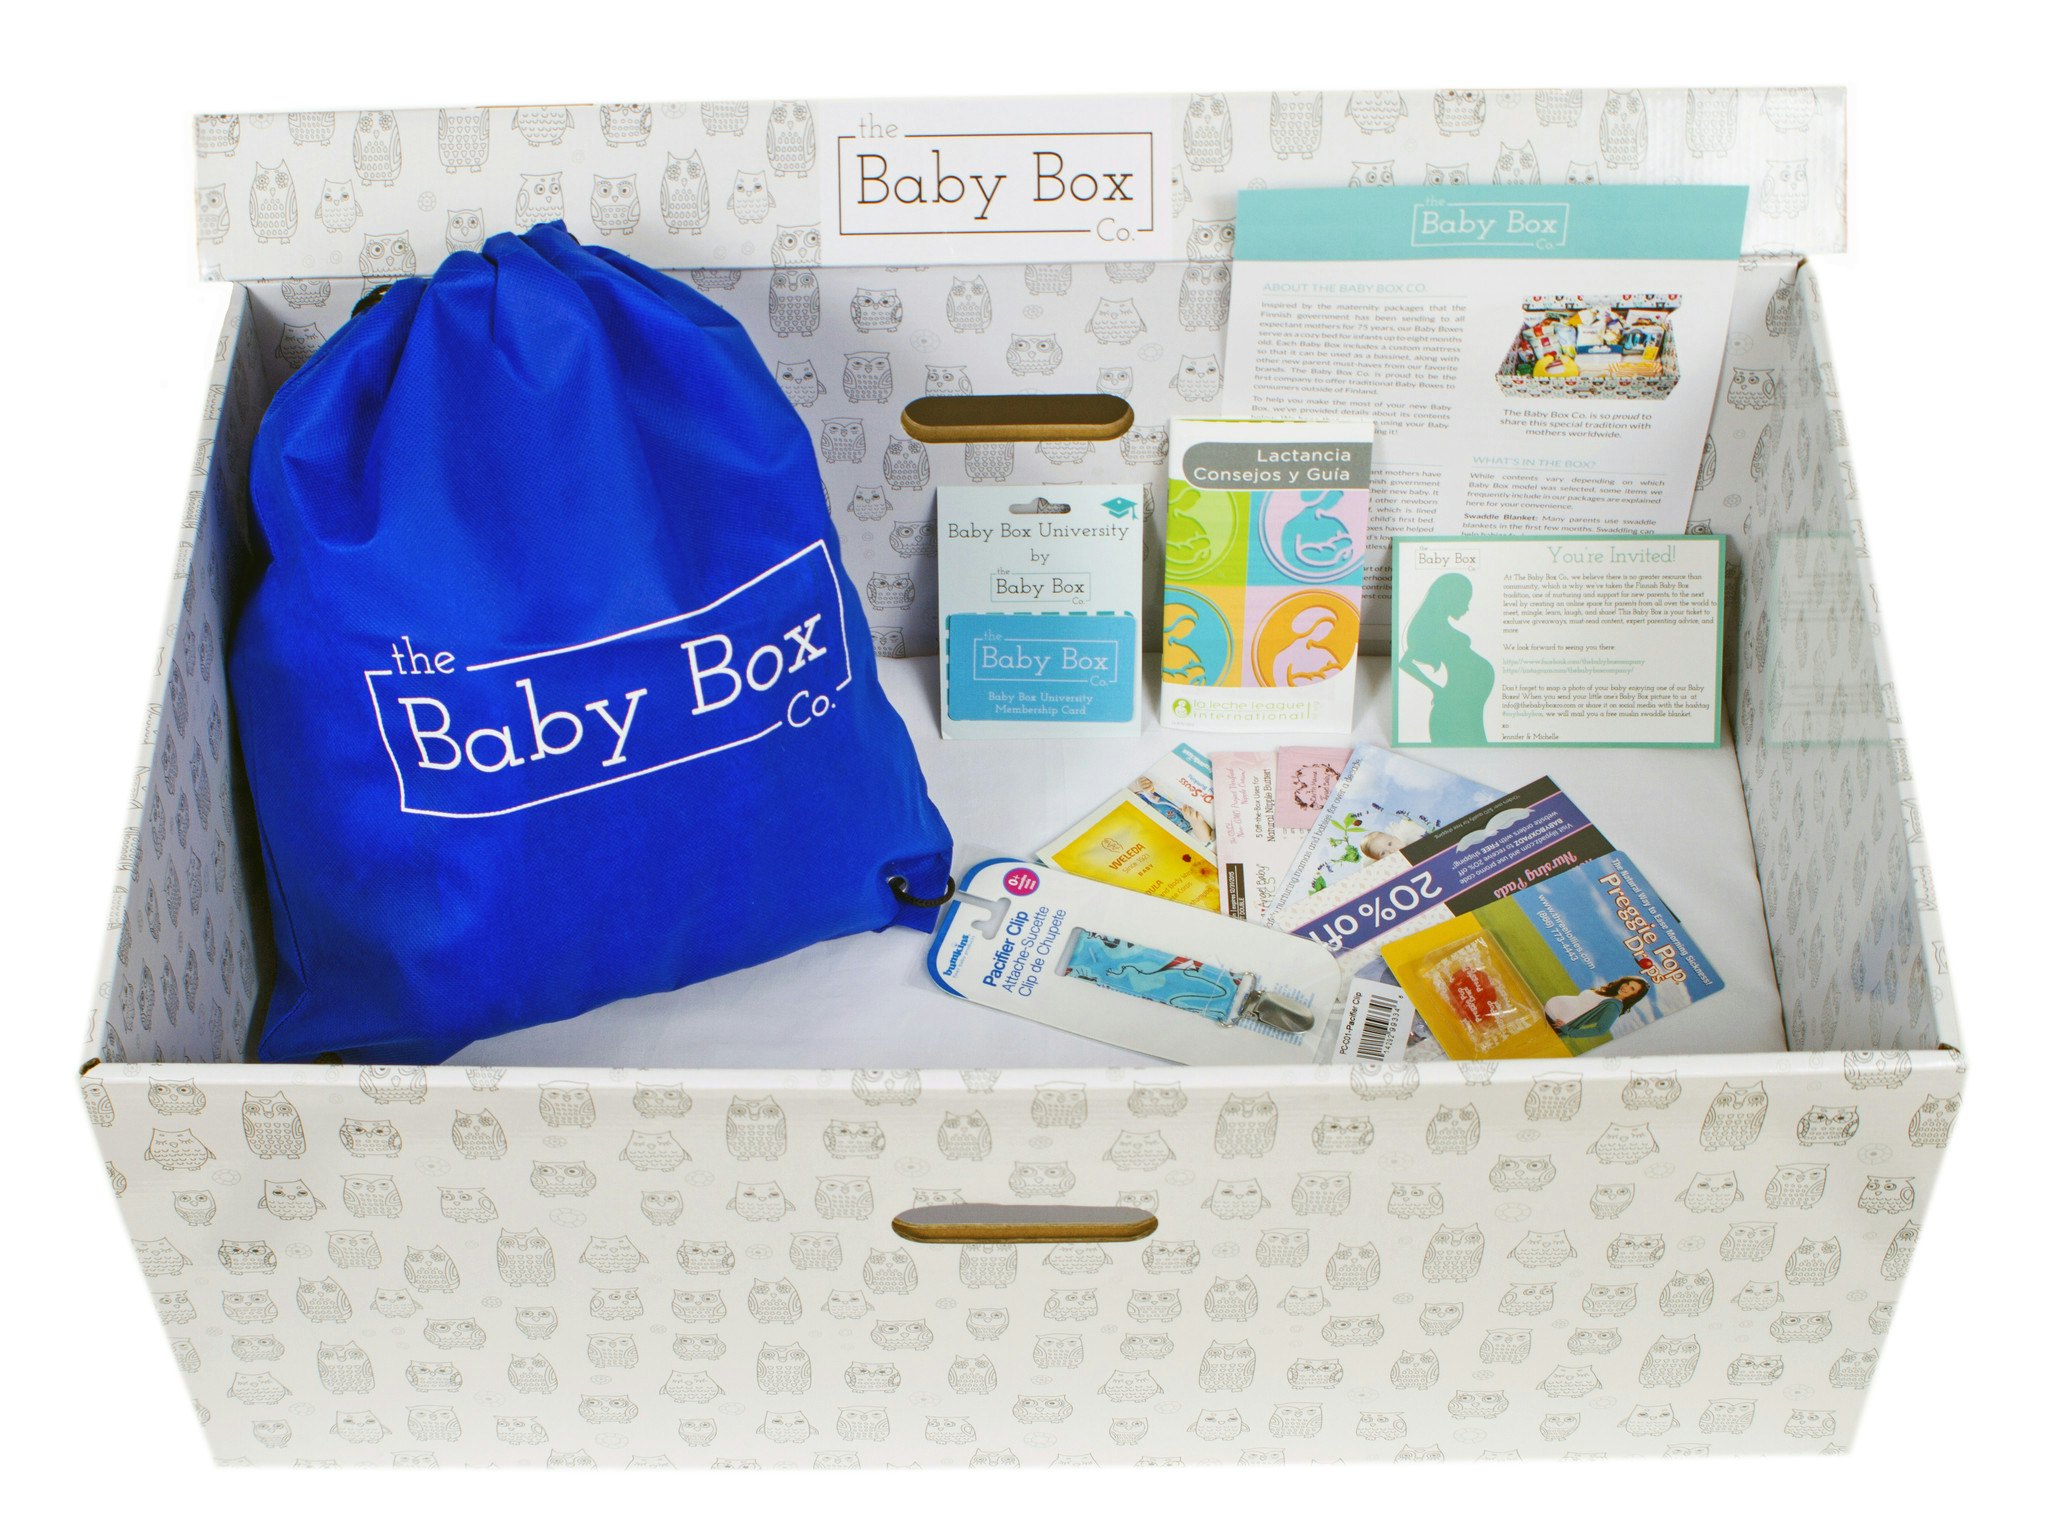 free baby box